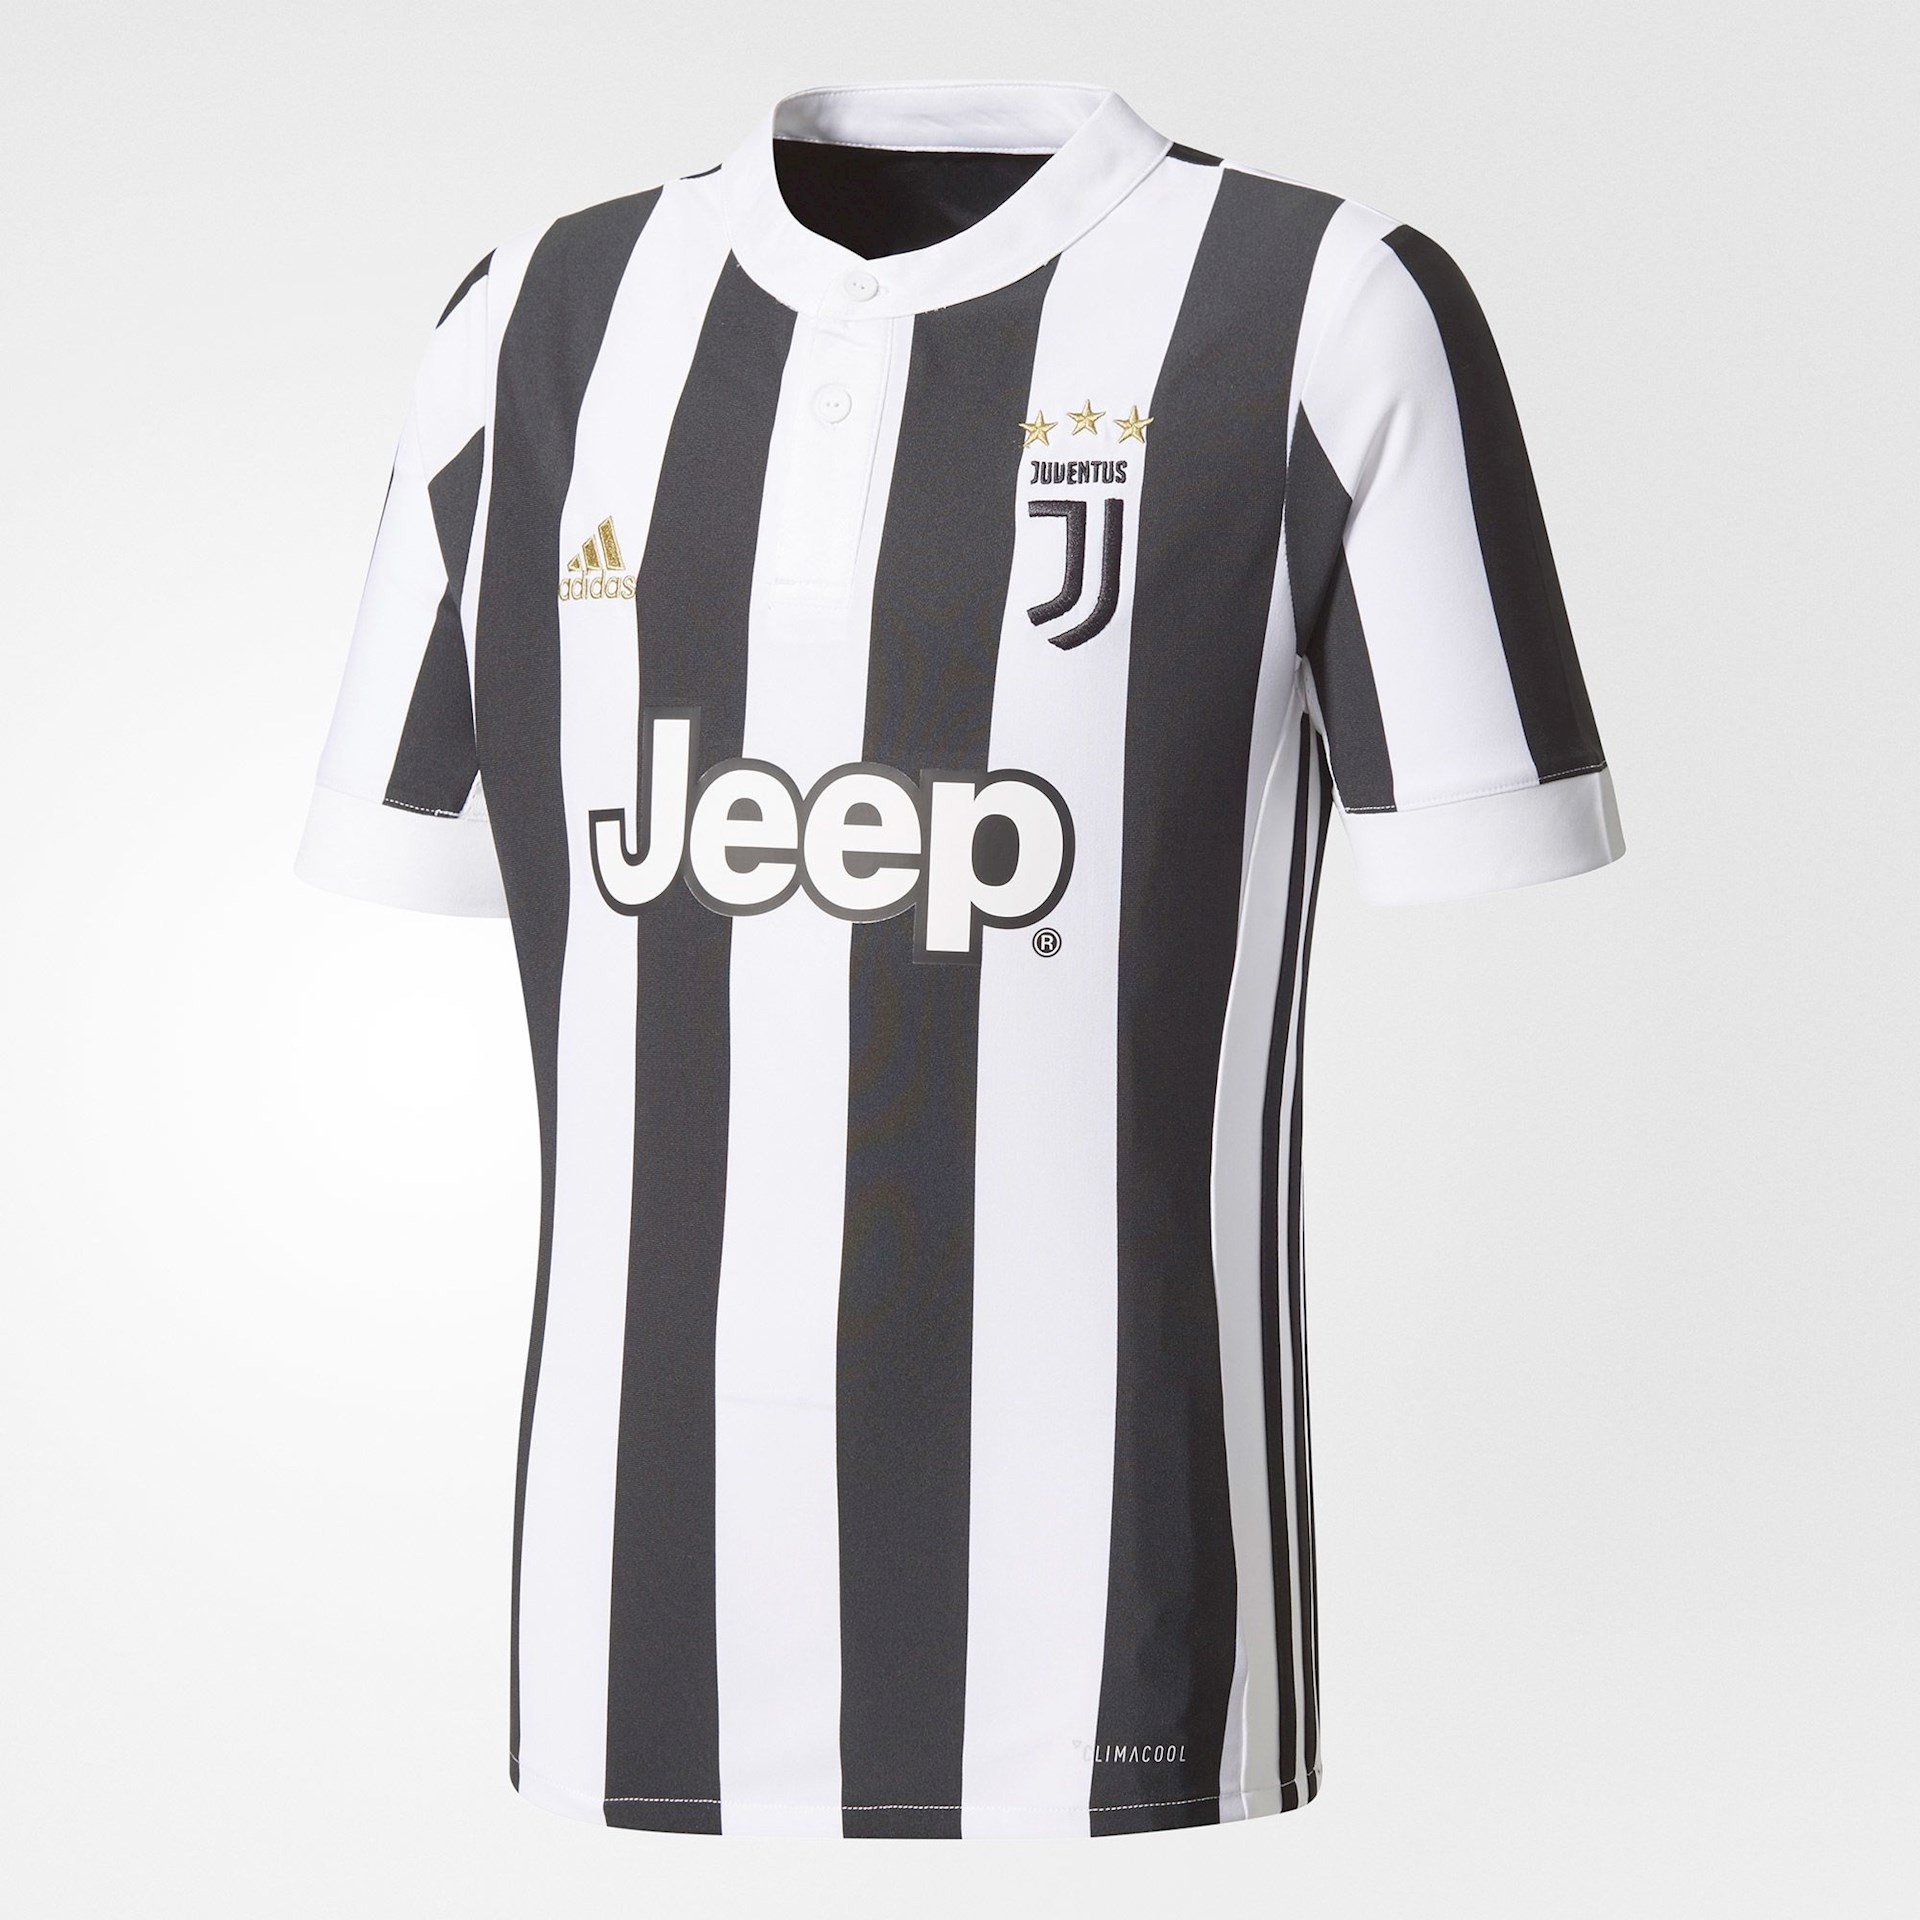 Juventus thuis shirt KIDS - Voetbalshirts.com1920 x 1920